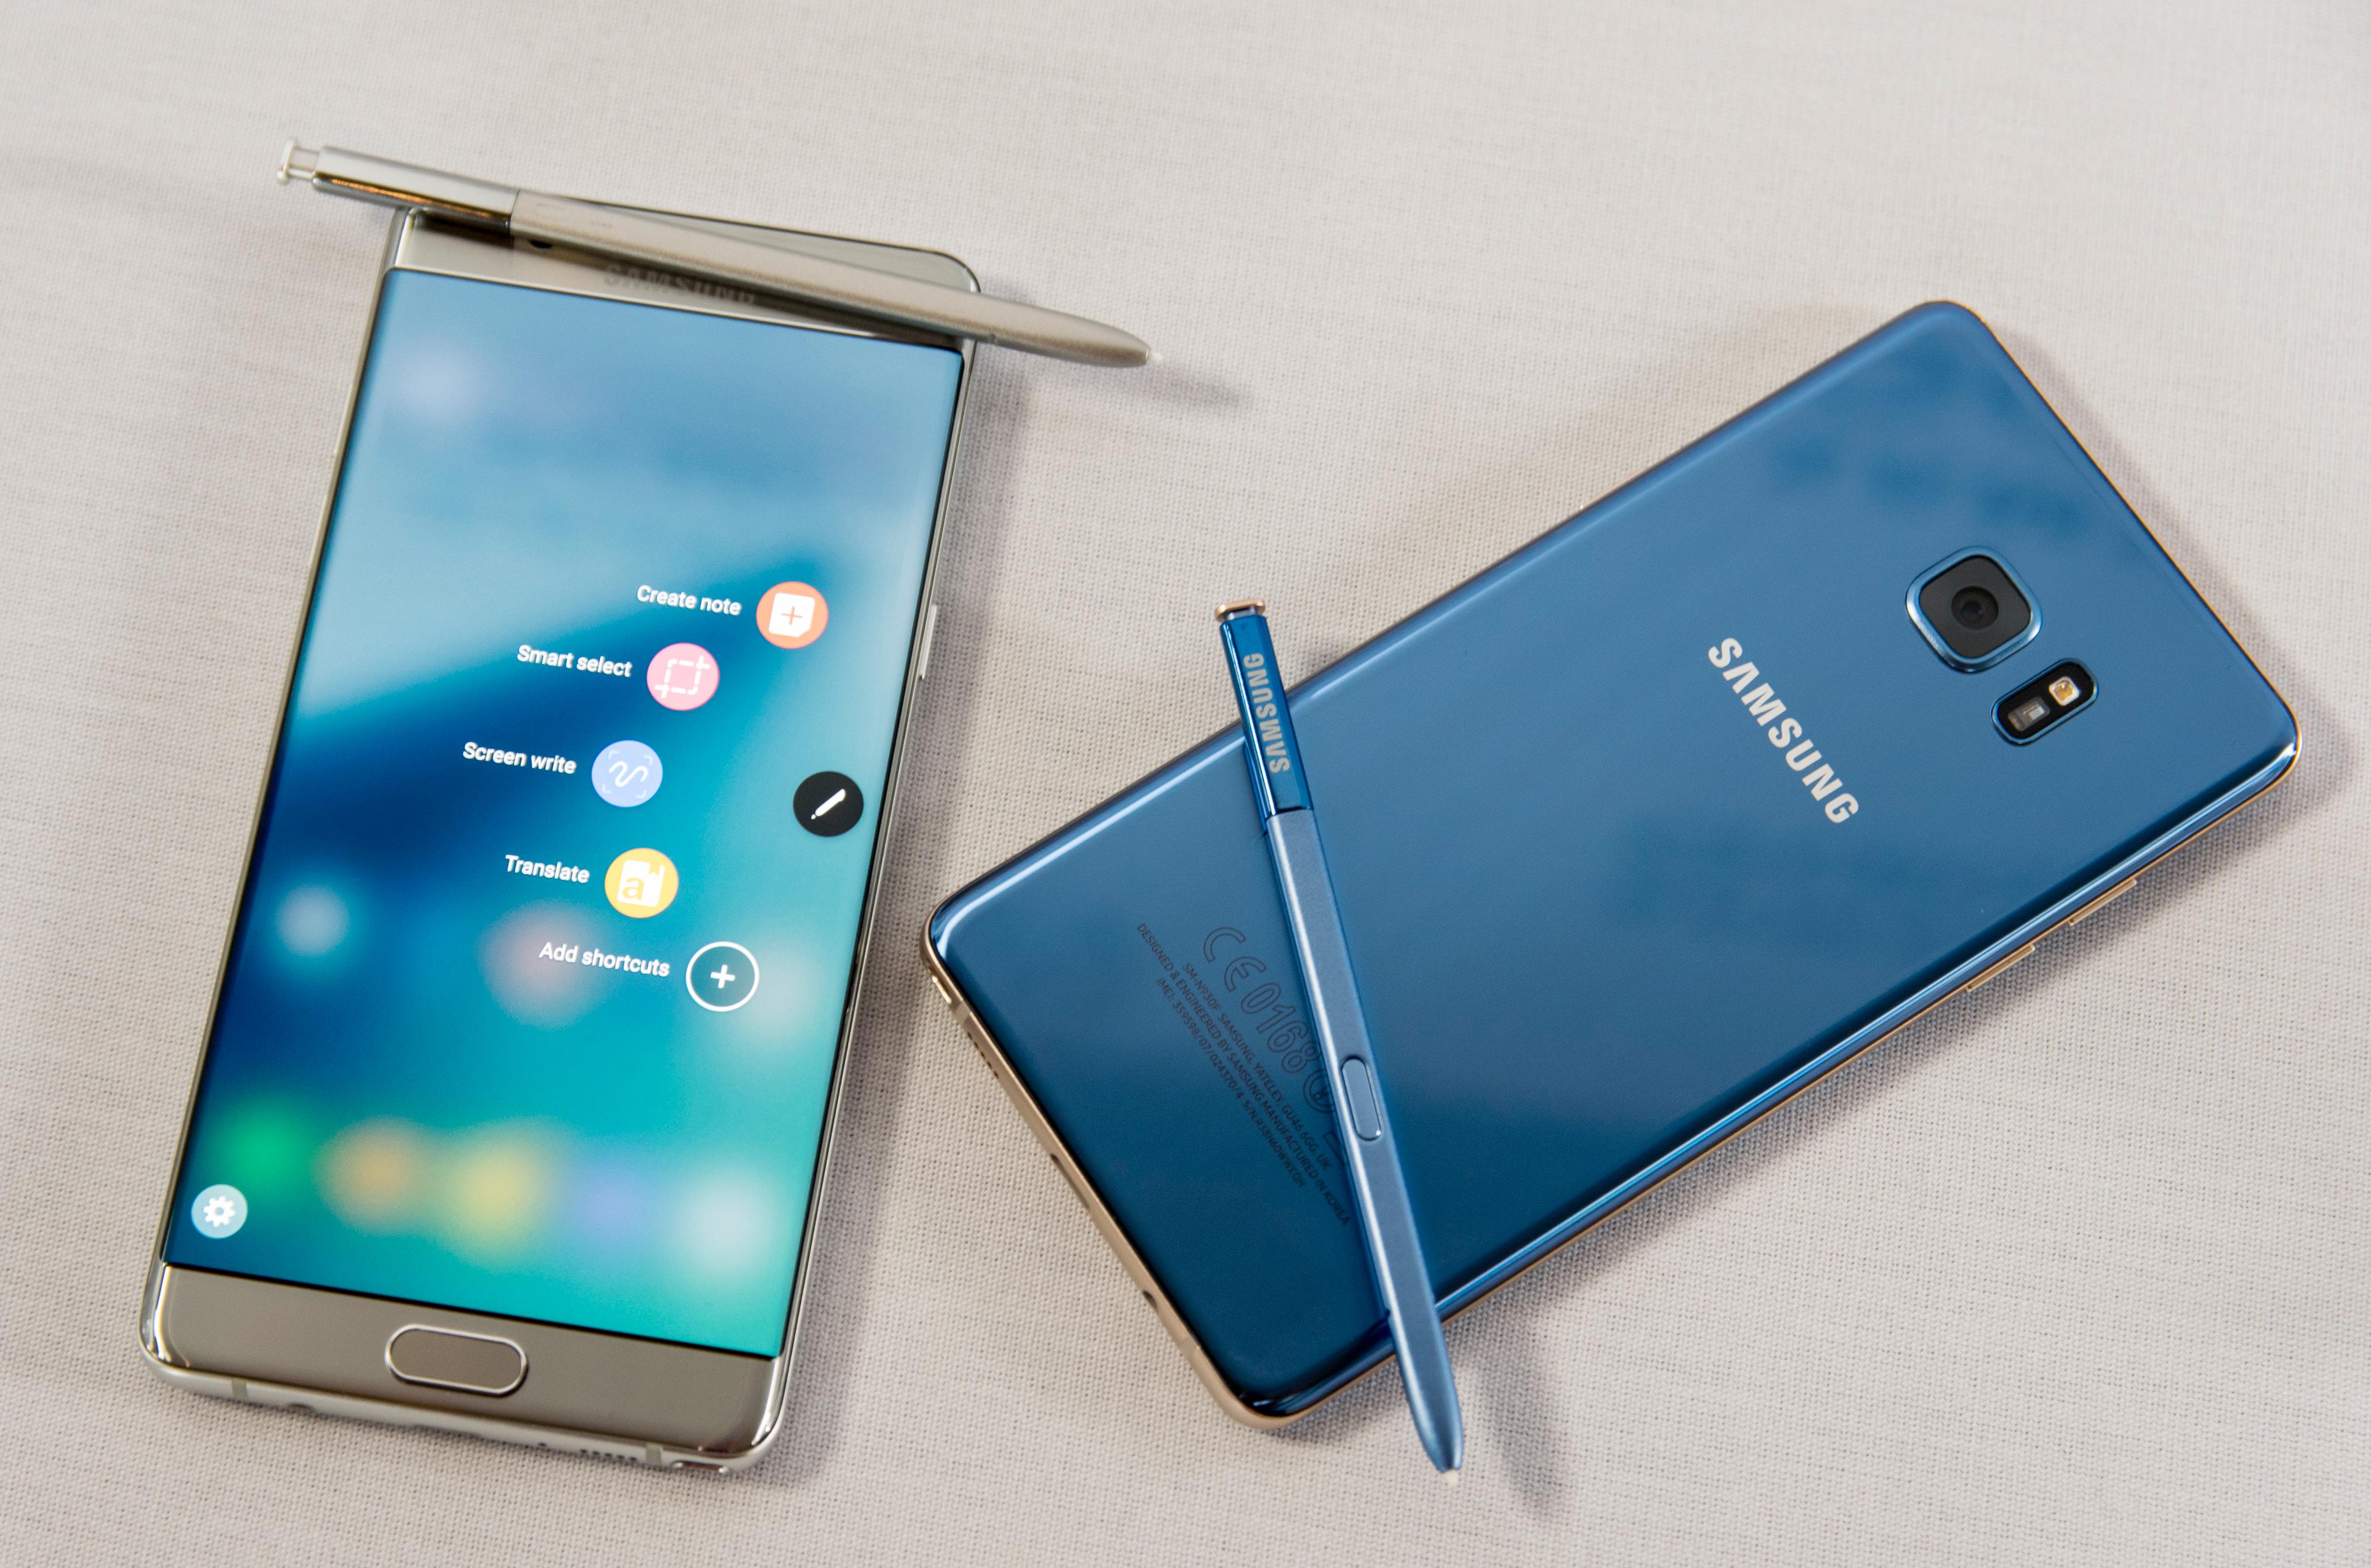 Sølv og korallblå er to av variantene Galaxy Note 7 kommer i.